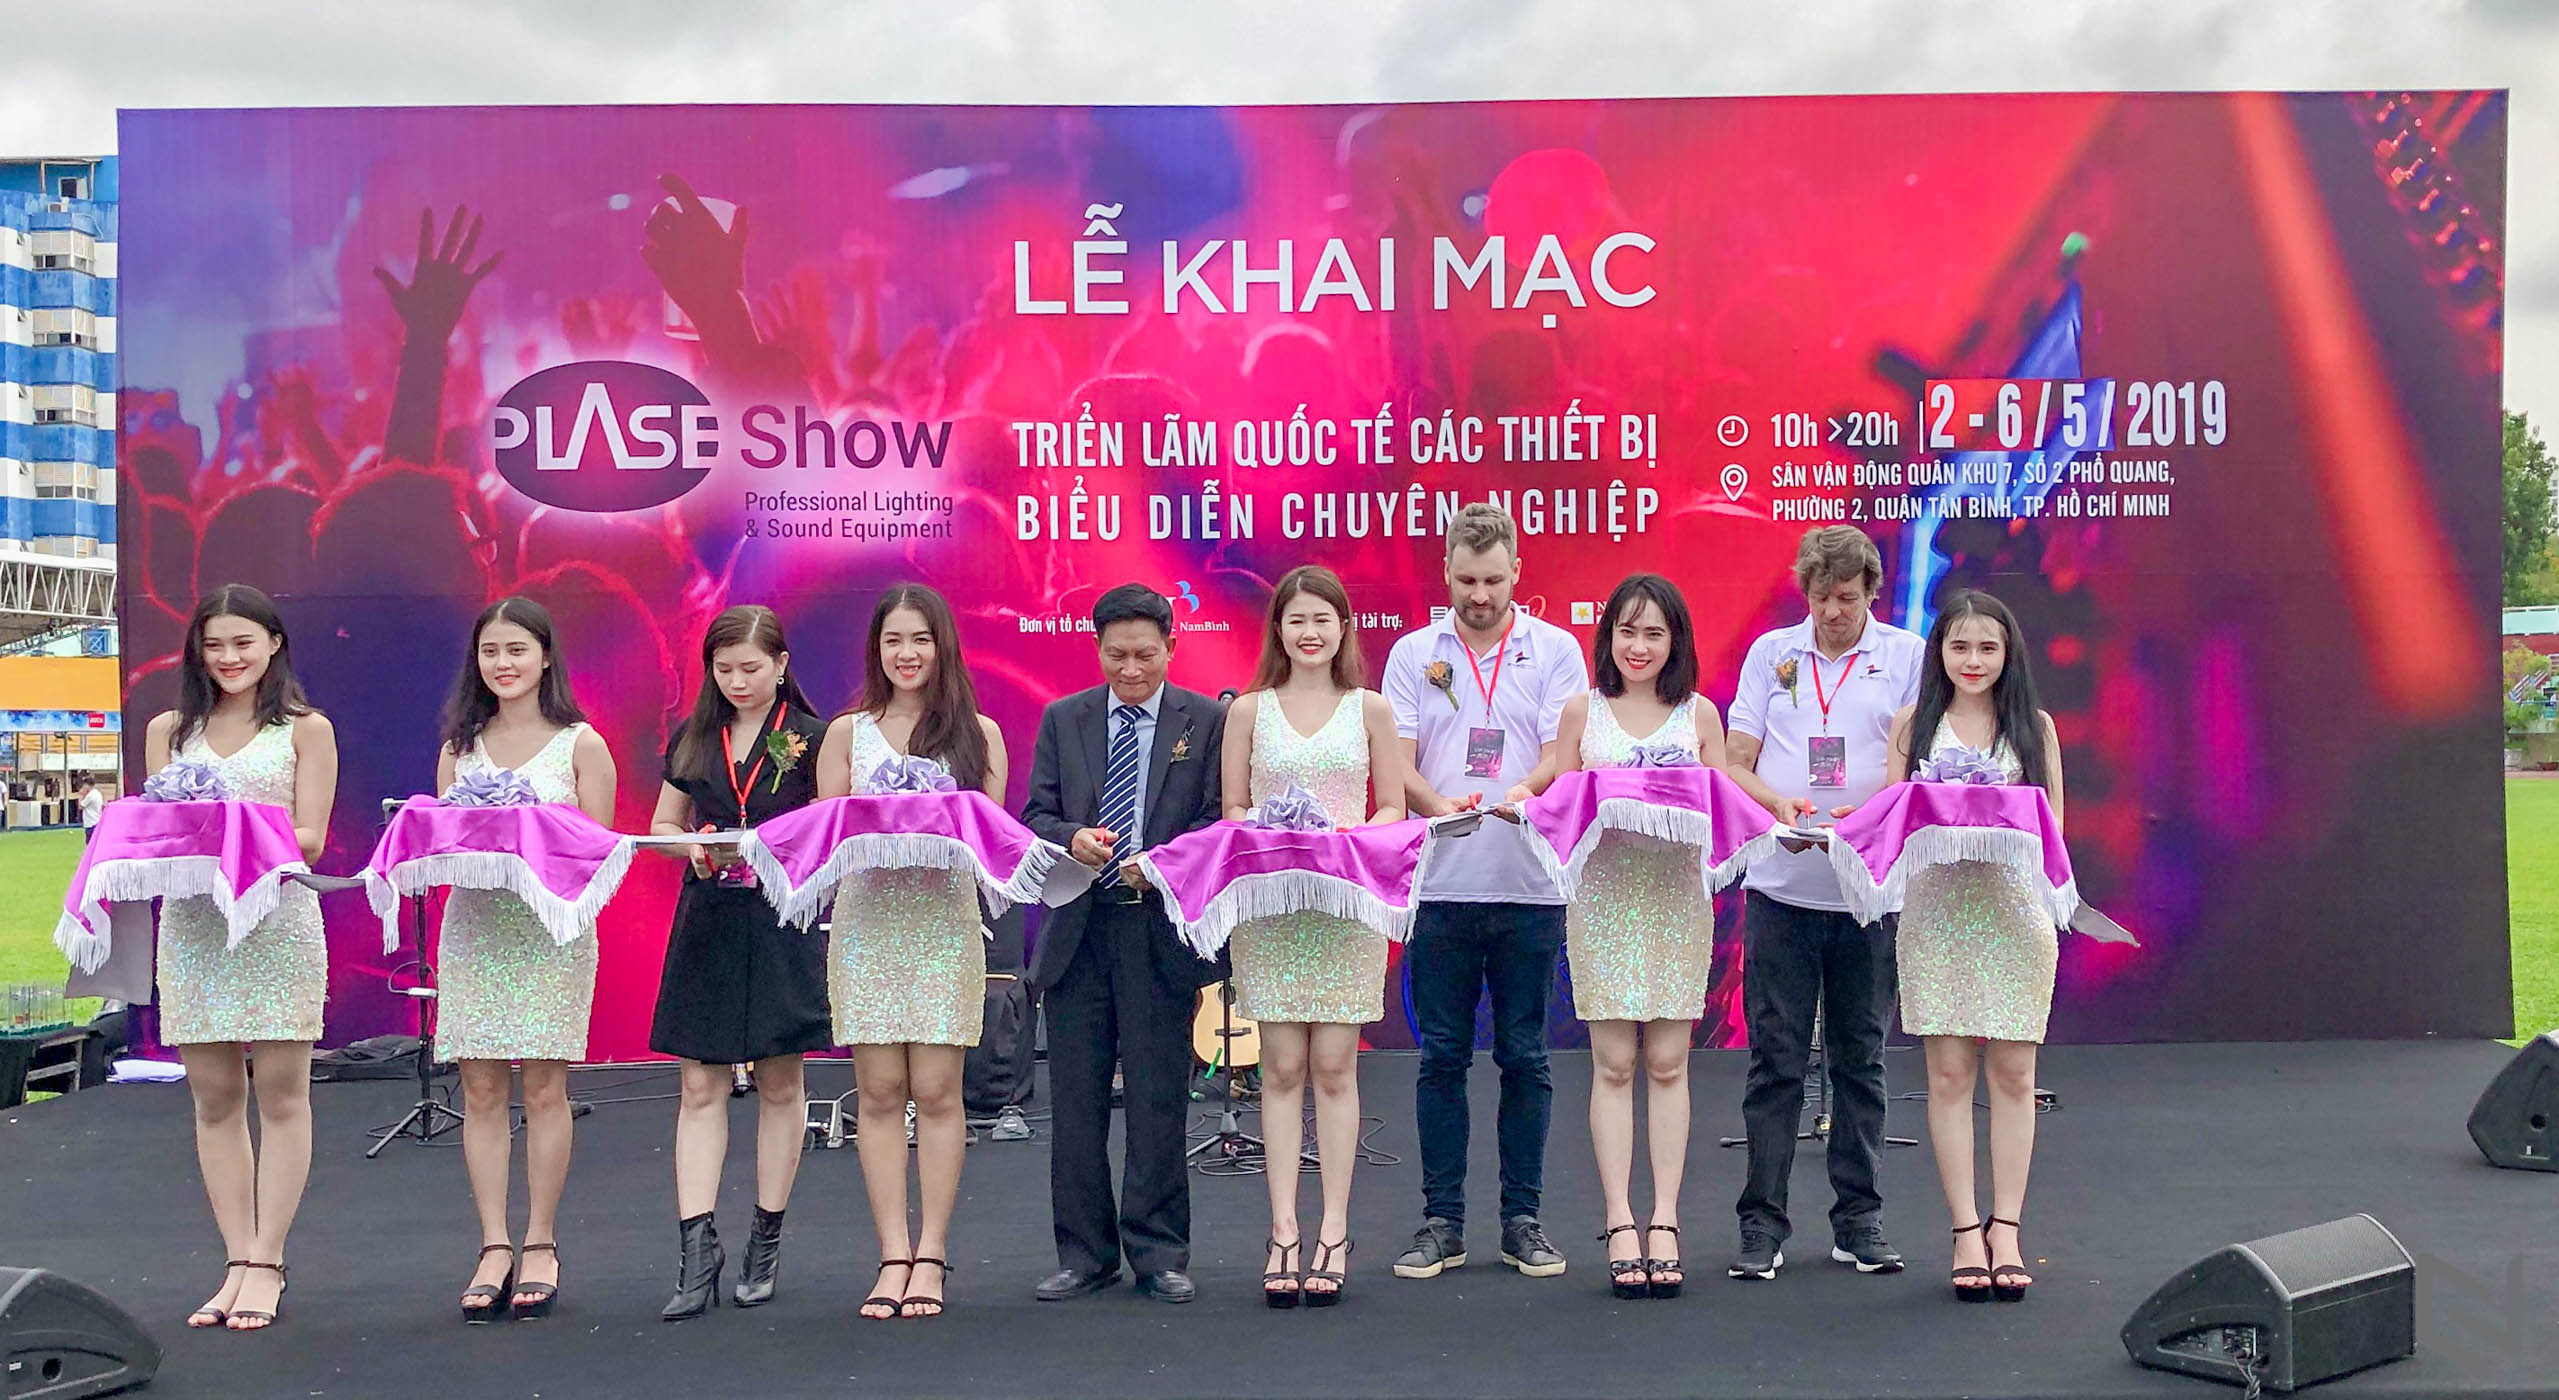 Triển lãm Quốc tế thiết bị biểu diễn chuyên nghiệp Plase Show chính thức khai mạc tại TP. Hồ Chí Minh